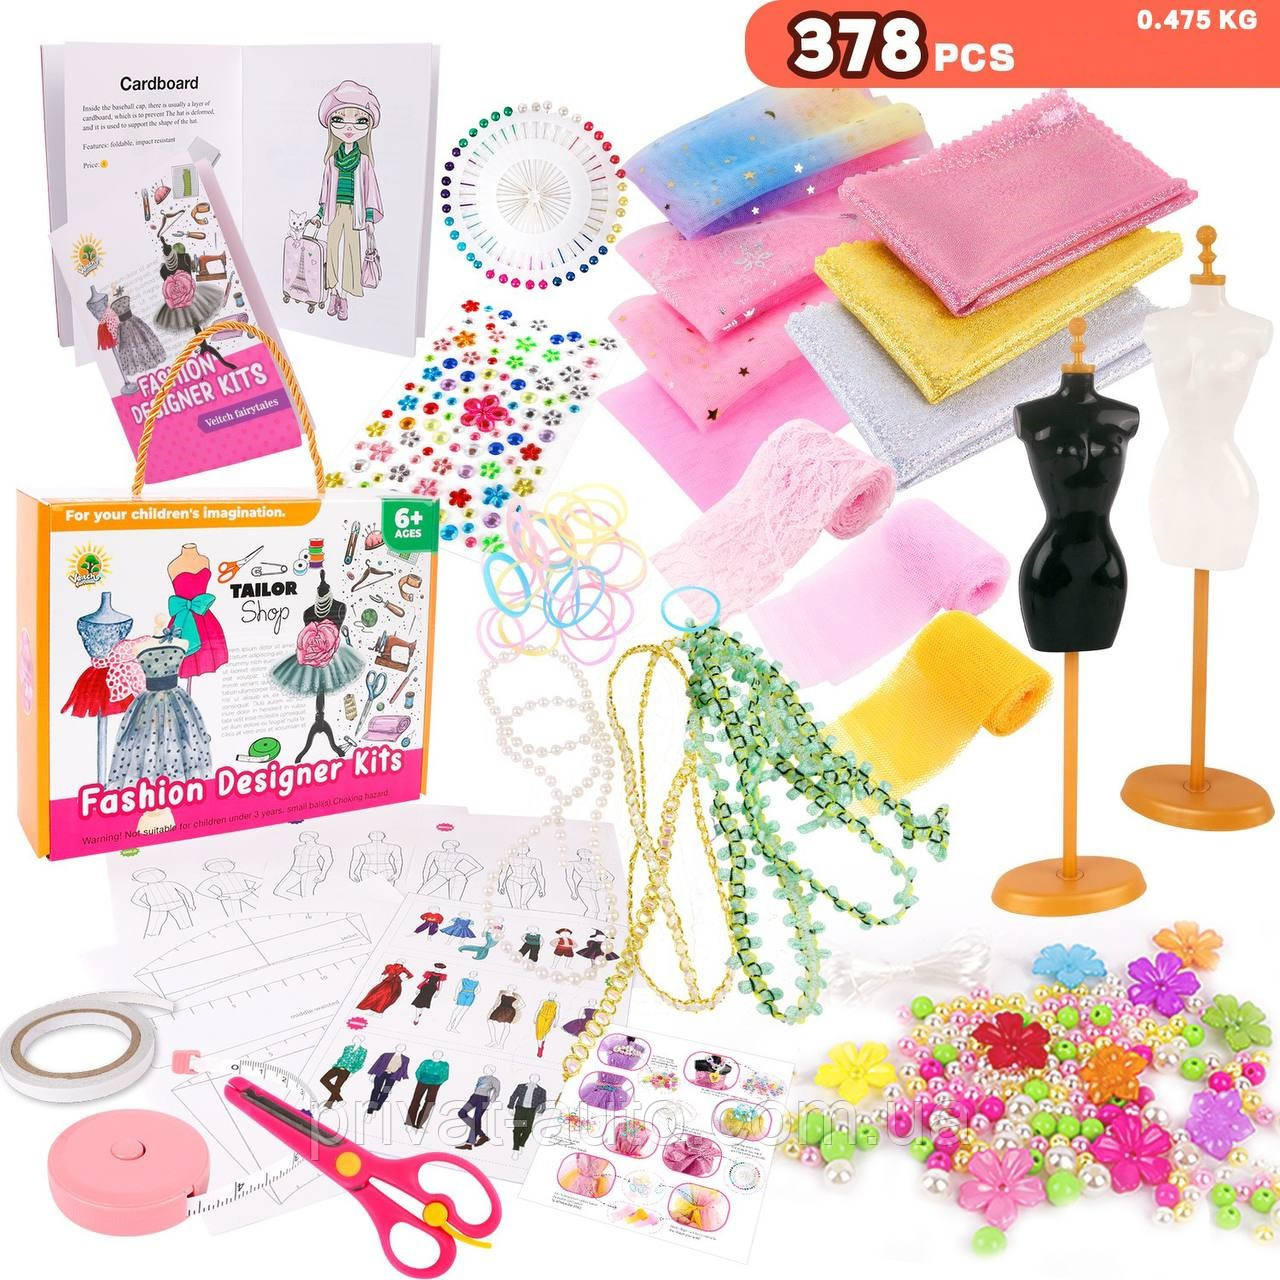 Дитячий набір для моделювання, шиття, рукоділля, творчості для дівчаток 6-12 років, S-378 елементів